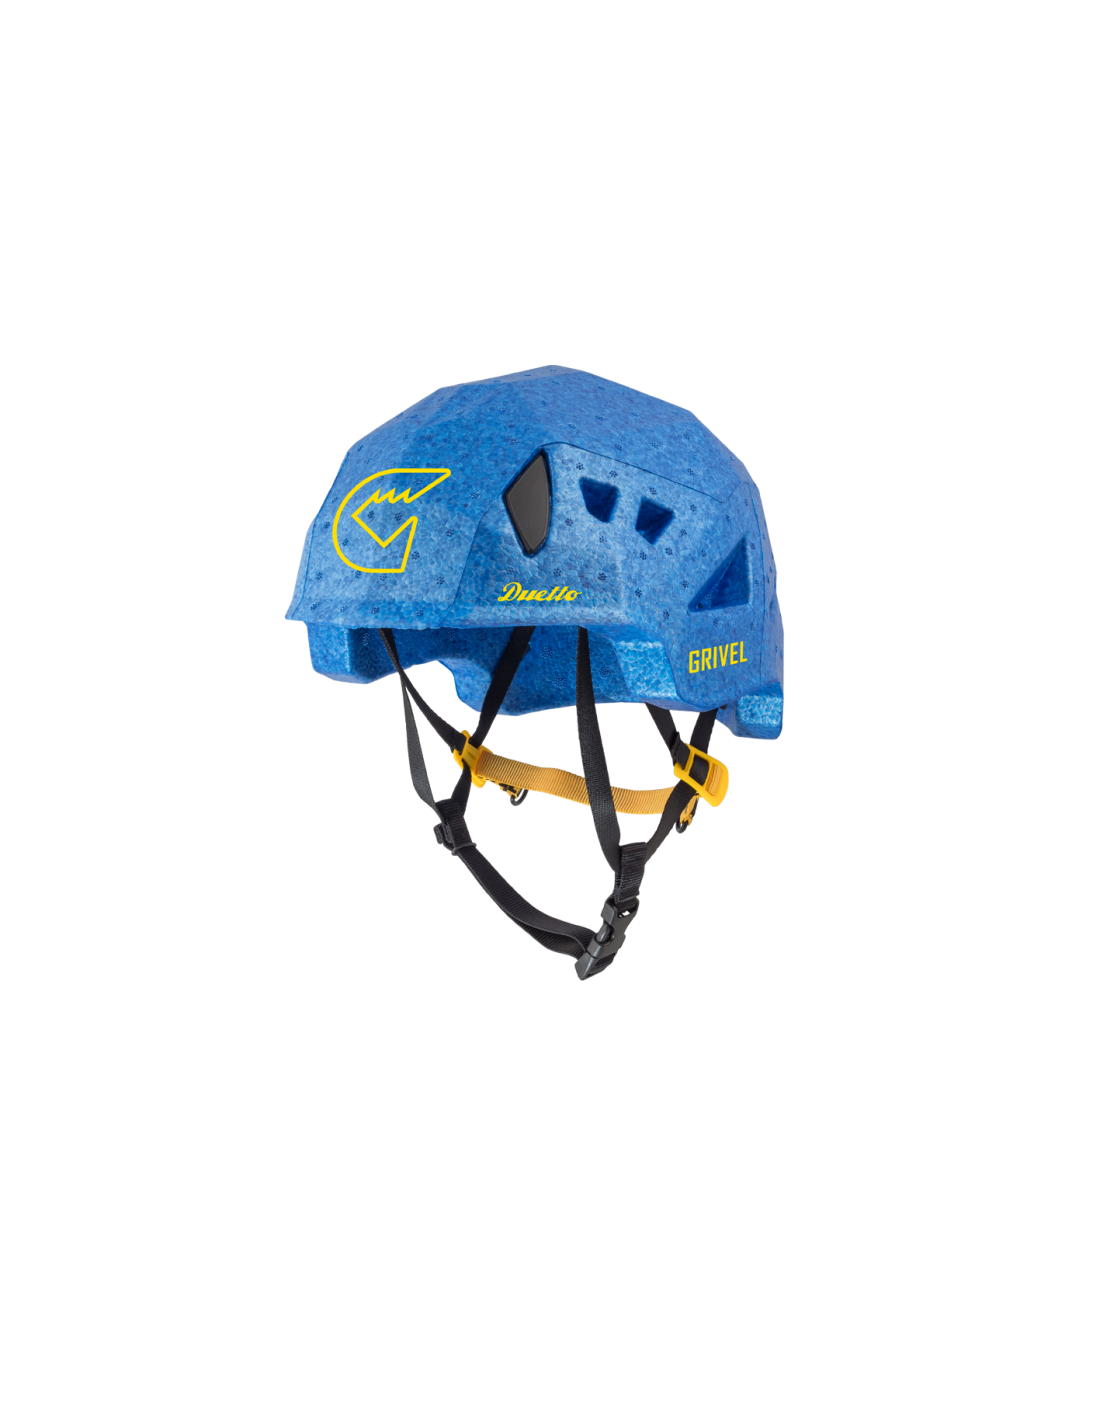 Grivel Helm Duetto, blau Kletterhelmgröße (Kopfumfang) - Einheitsgröße, Kletterhelmfarbe - Blau, Kletterhelmgewicht - 200 - 220g, von Grivel